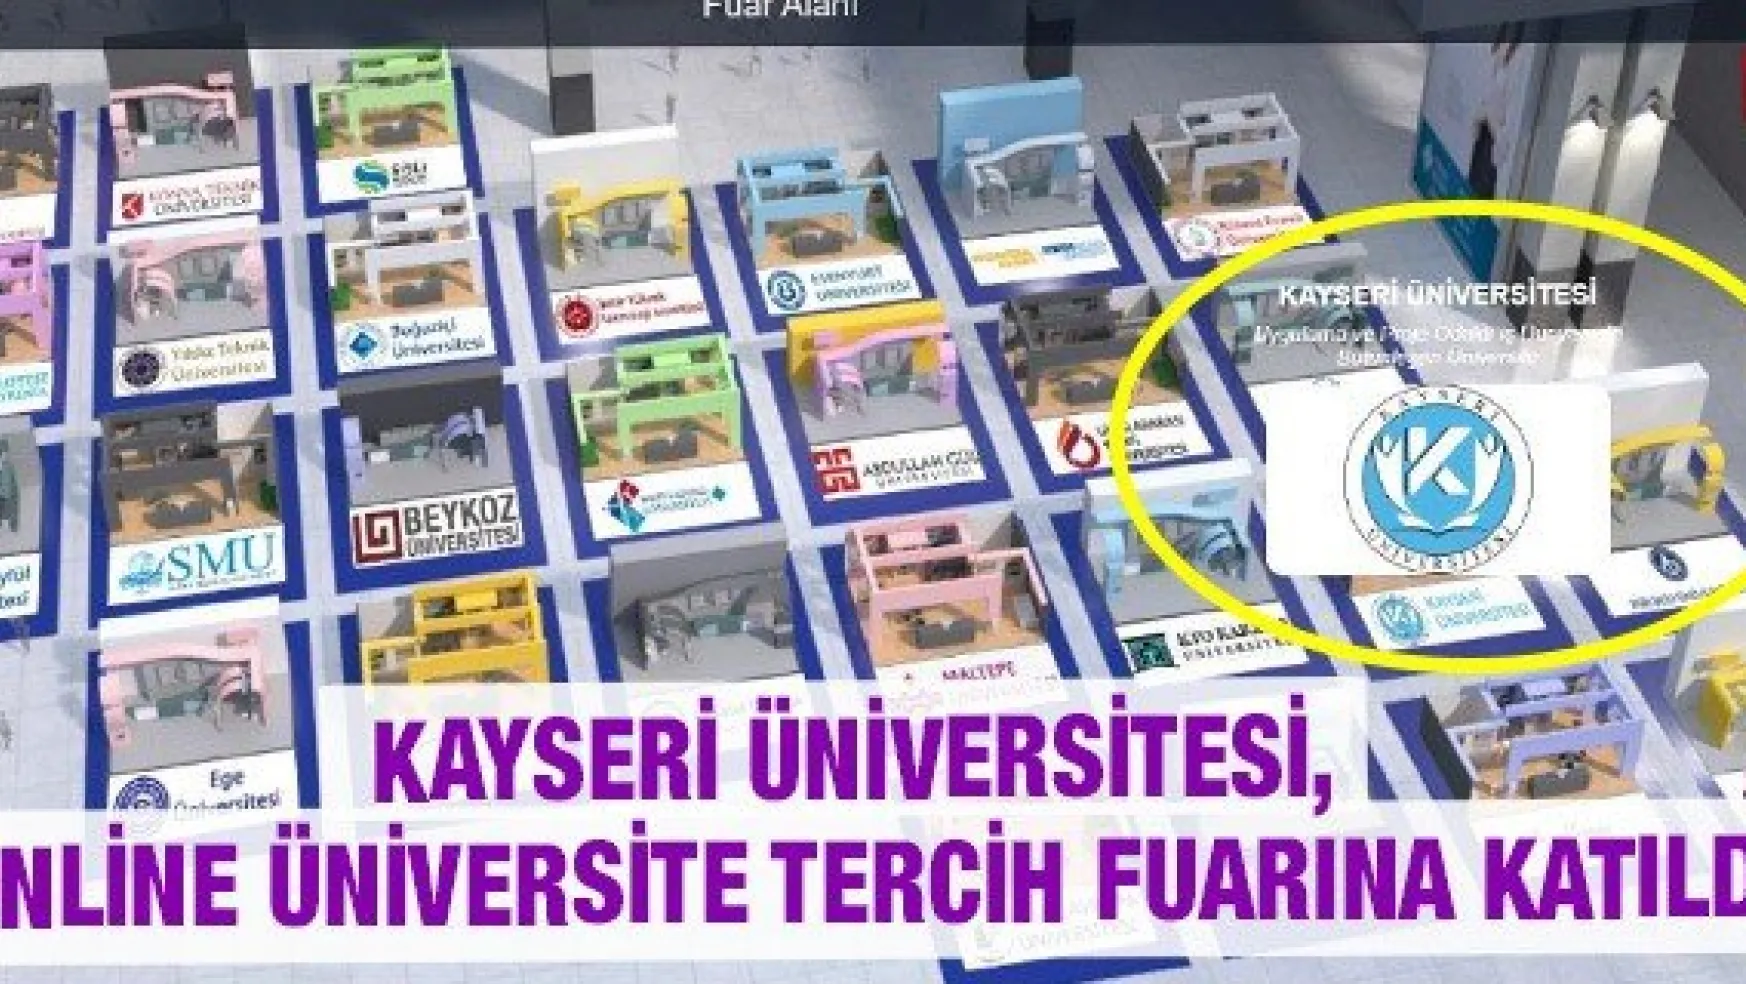 Kayseri Üniversitesi, Online Üniversite Tercih Fuarına Katıldı